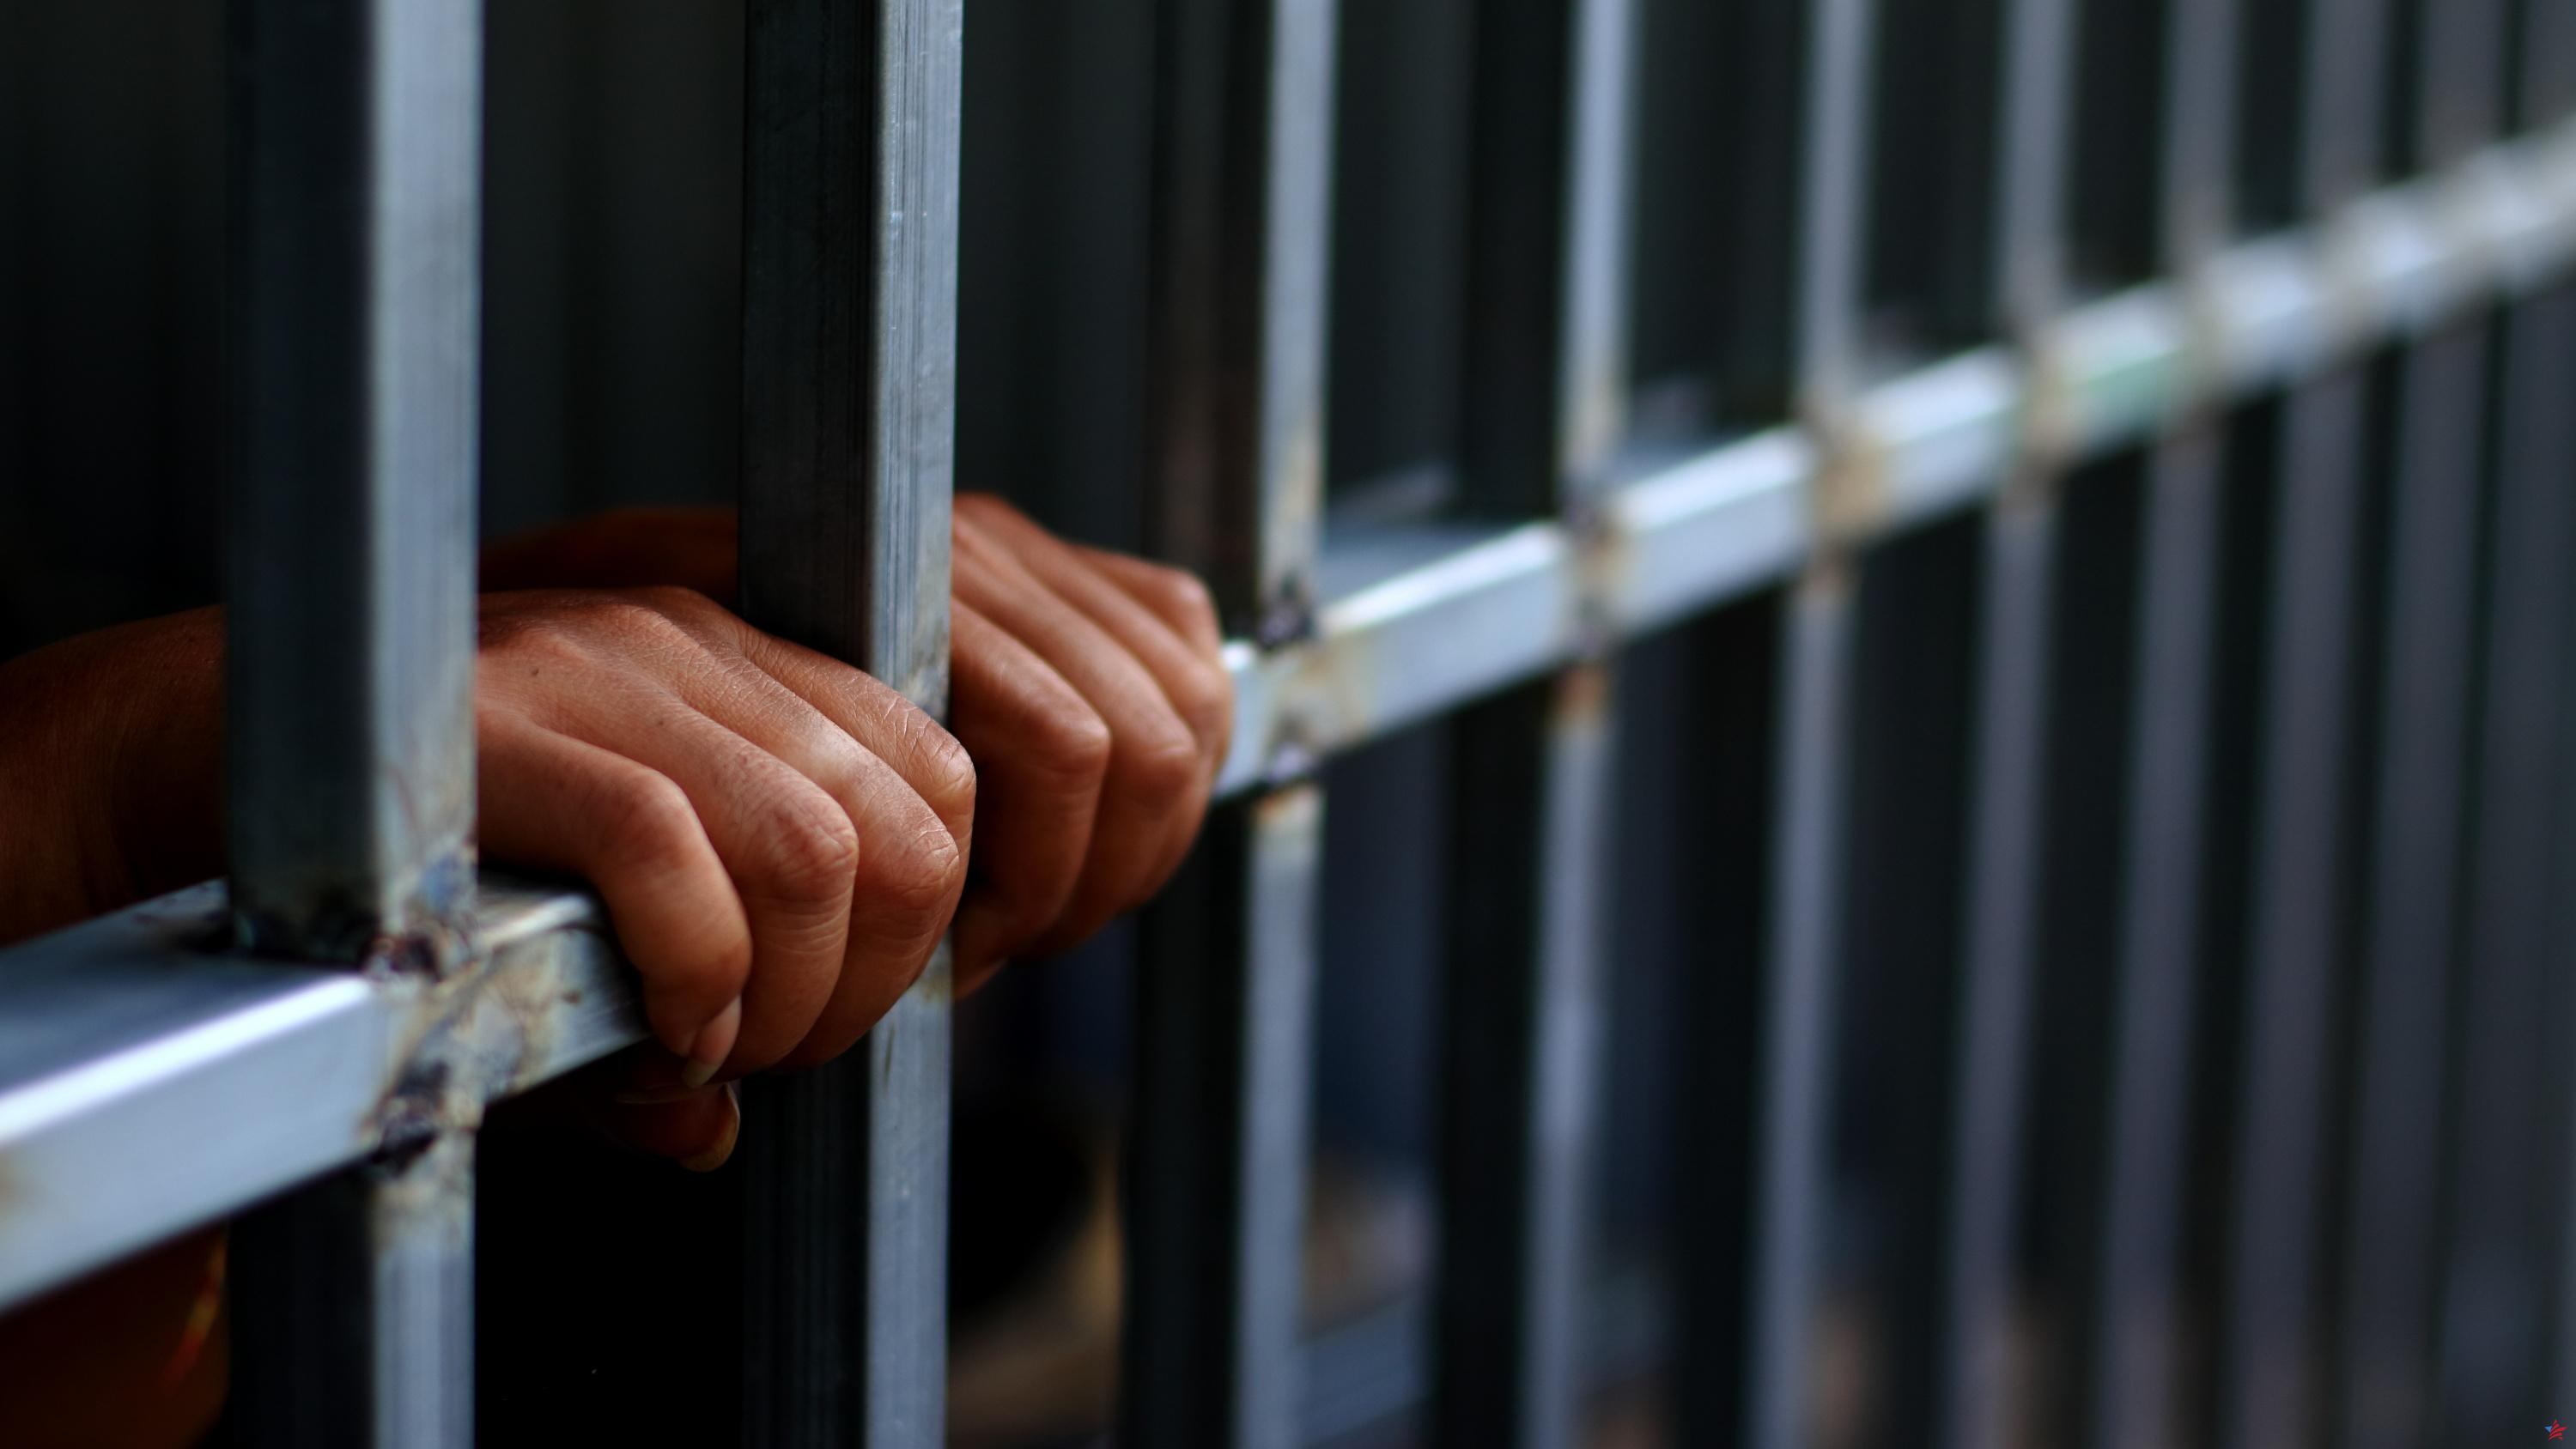 Condenas de hasta cuatro años de prisión para tres jóvenes juzgados por proyectos de acción radical